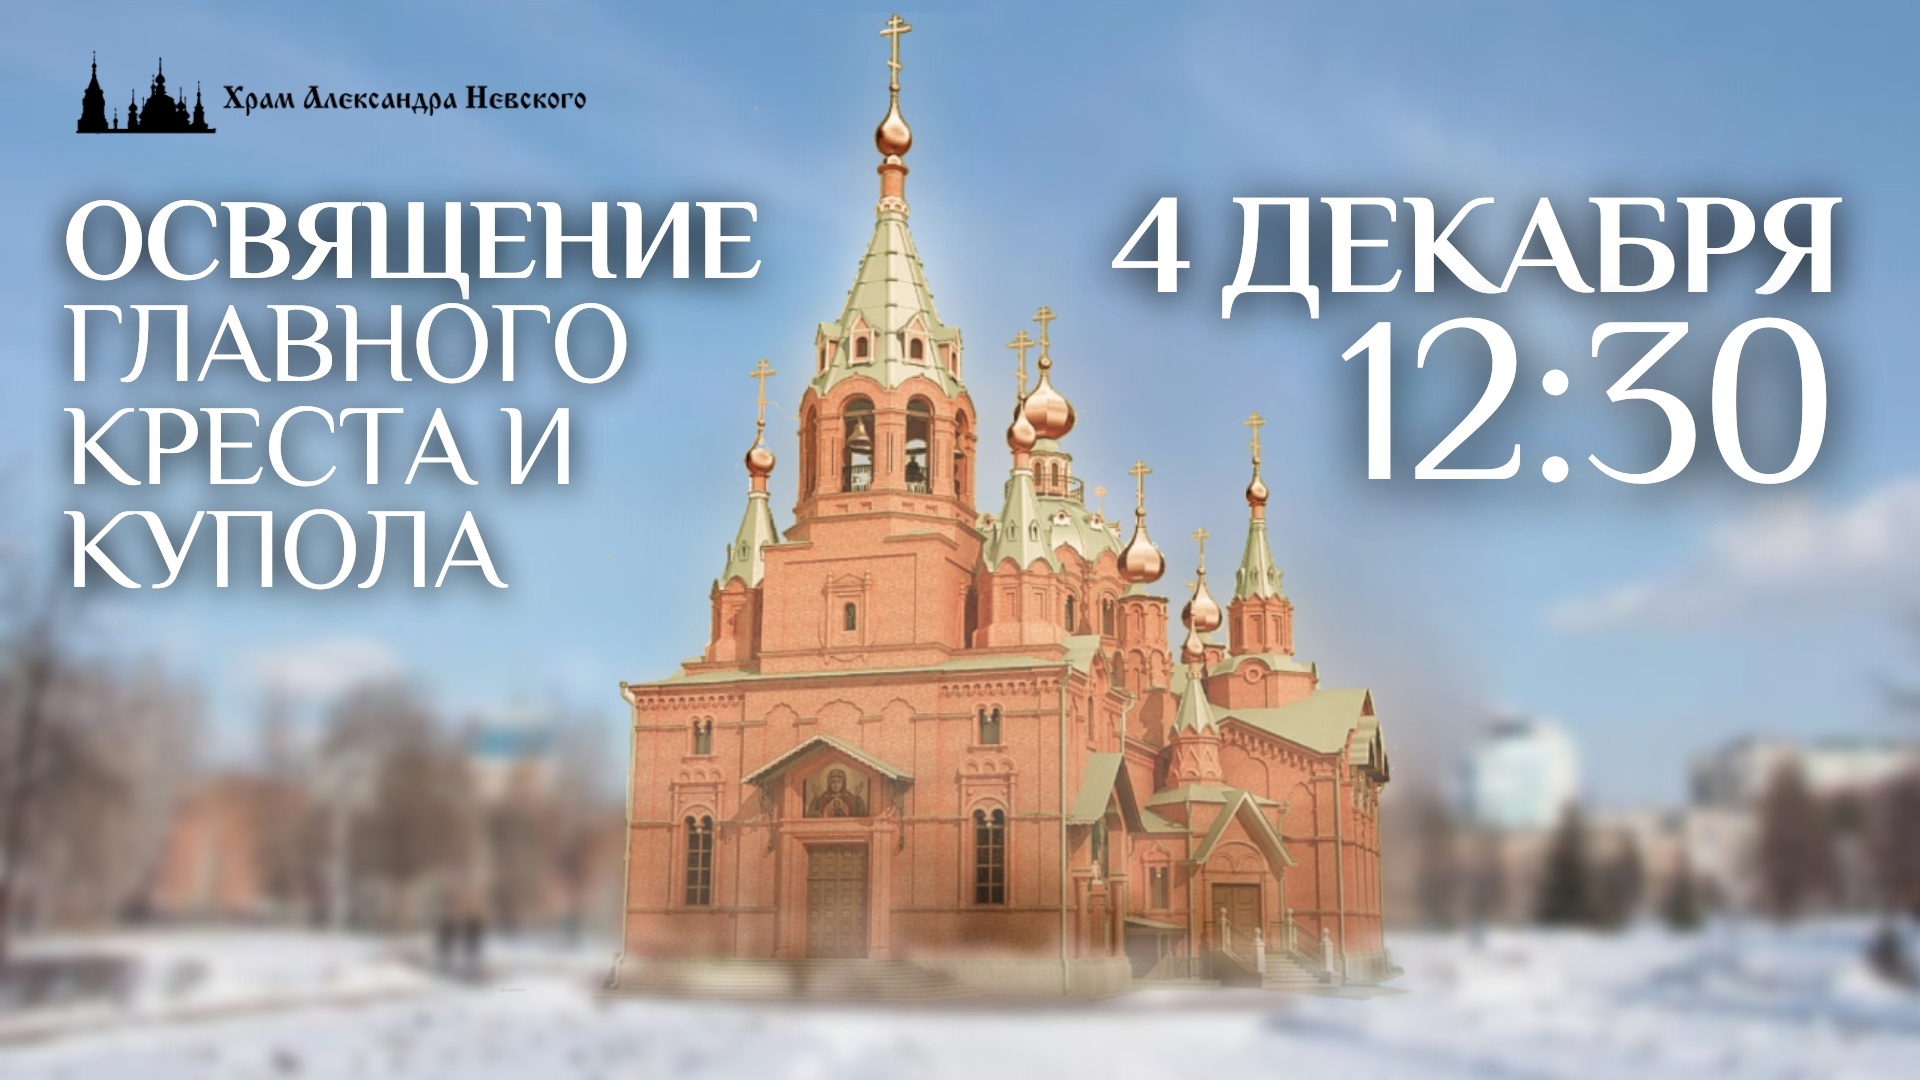 Храм Александра Невского в Солнечном